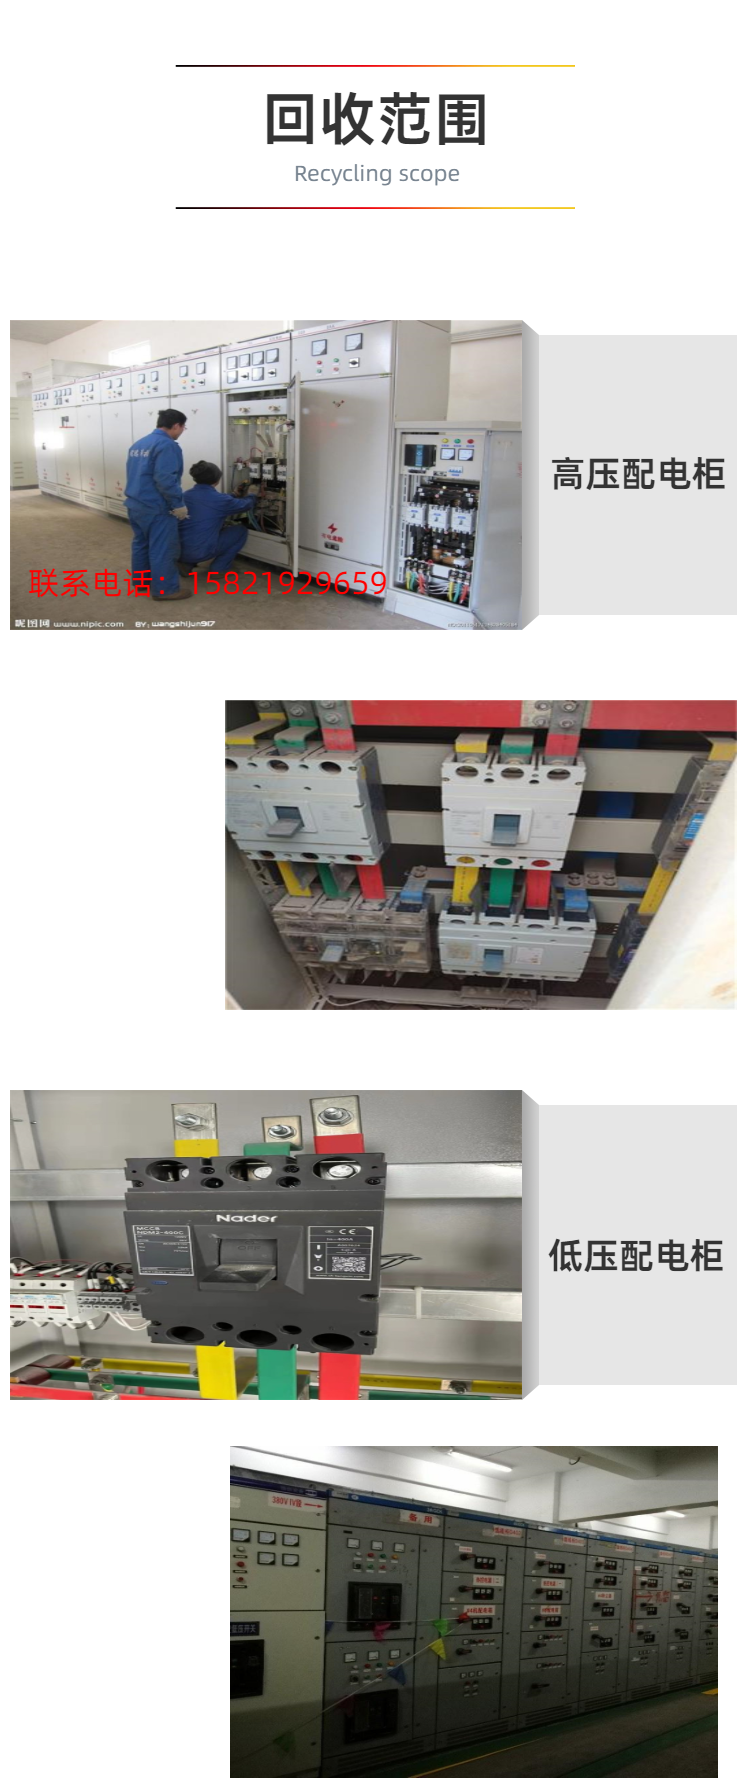 蚌埠高低压配电柜回收 拆除配电柜回收现场估价